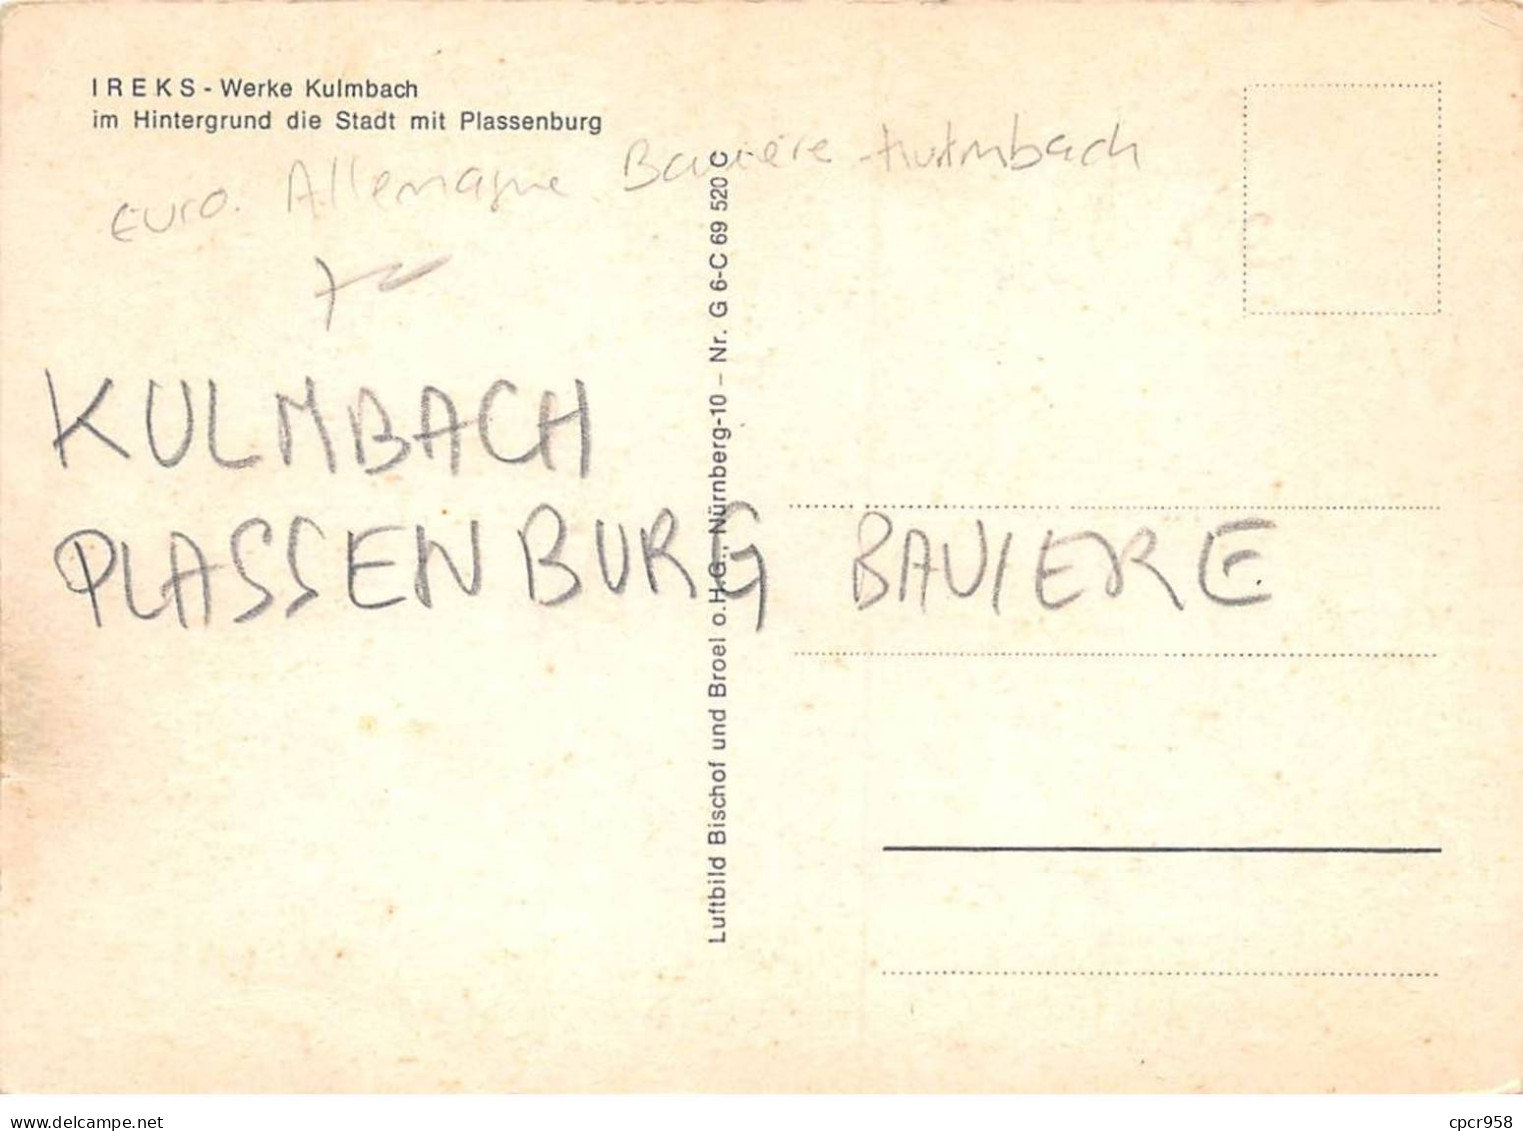 ALLEMAGNE - KULMBACH - SAN42915 - IREKS - Werke Kulmbach Im Hintergrund Die Stadr Mit Plassenburg - CPSM 15x10 Cm - Kulmbach